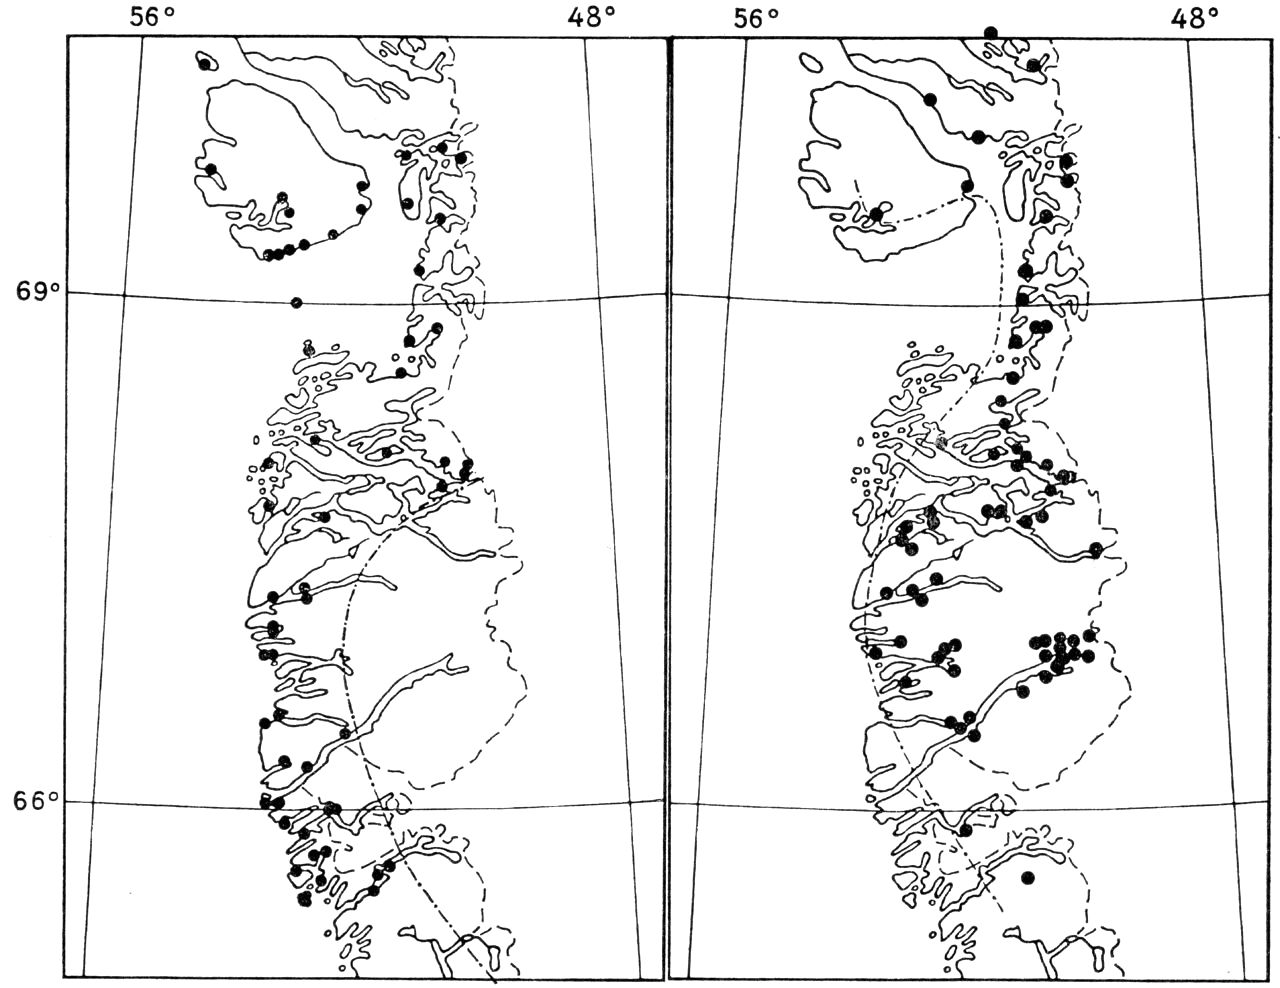 (Kort). Midt-Vestgrønland. T.v. udbredelsen af grå kattefod, der undgår de kontinentaleste områder. T.h. steppe-star, der kun findes i kontinentale områder.